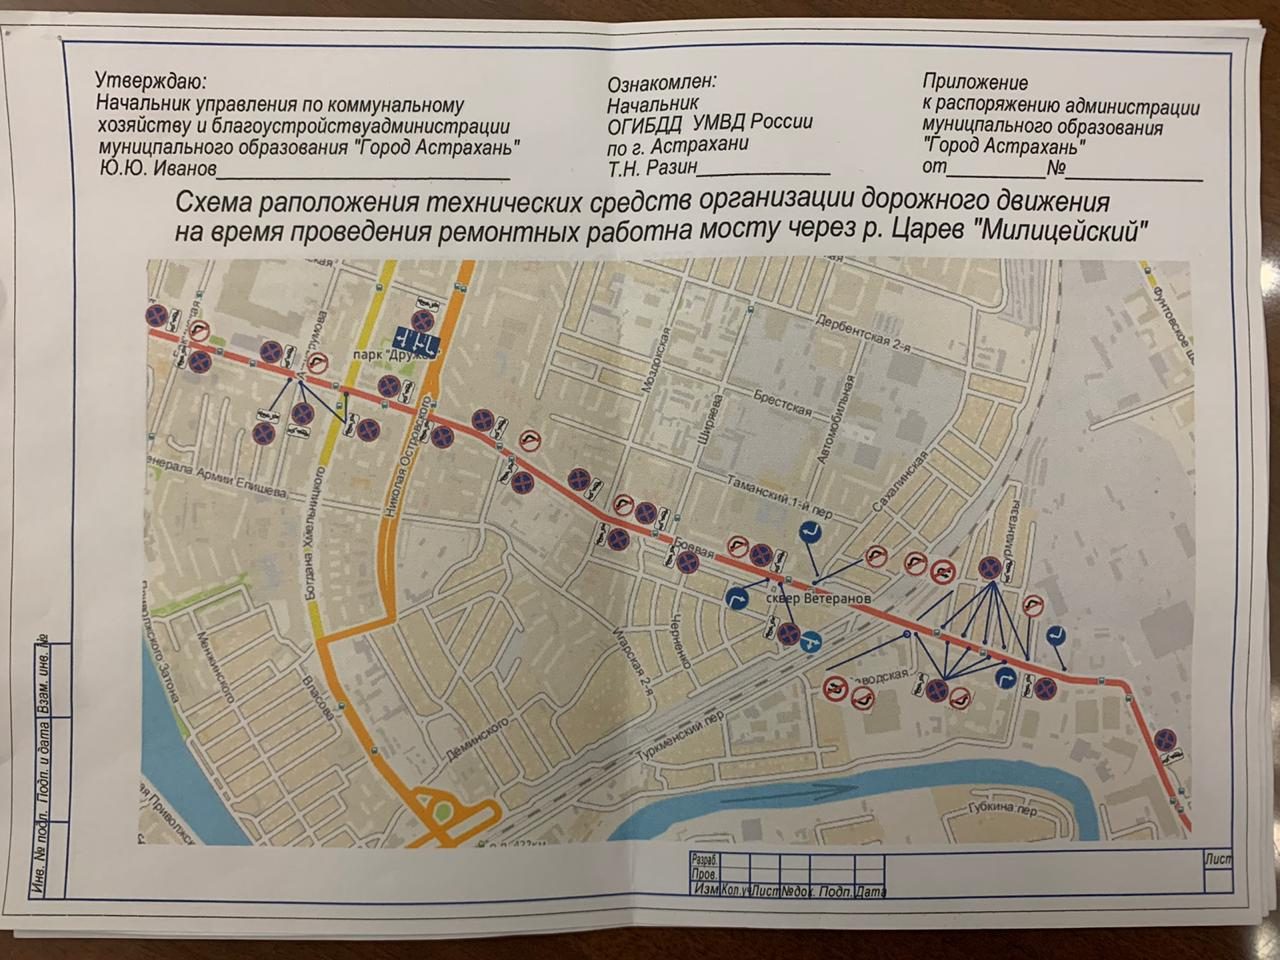 WhatsApp Image 2020 02 26 at 20.45.21 e1582784979365 В Астрахани откроют мост через реку Царев для пешеходов